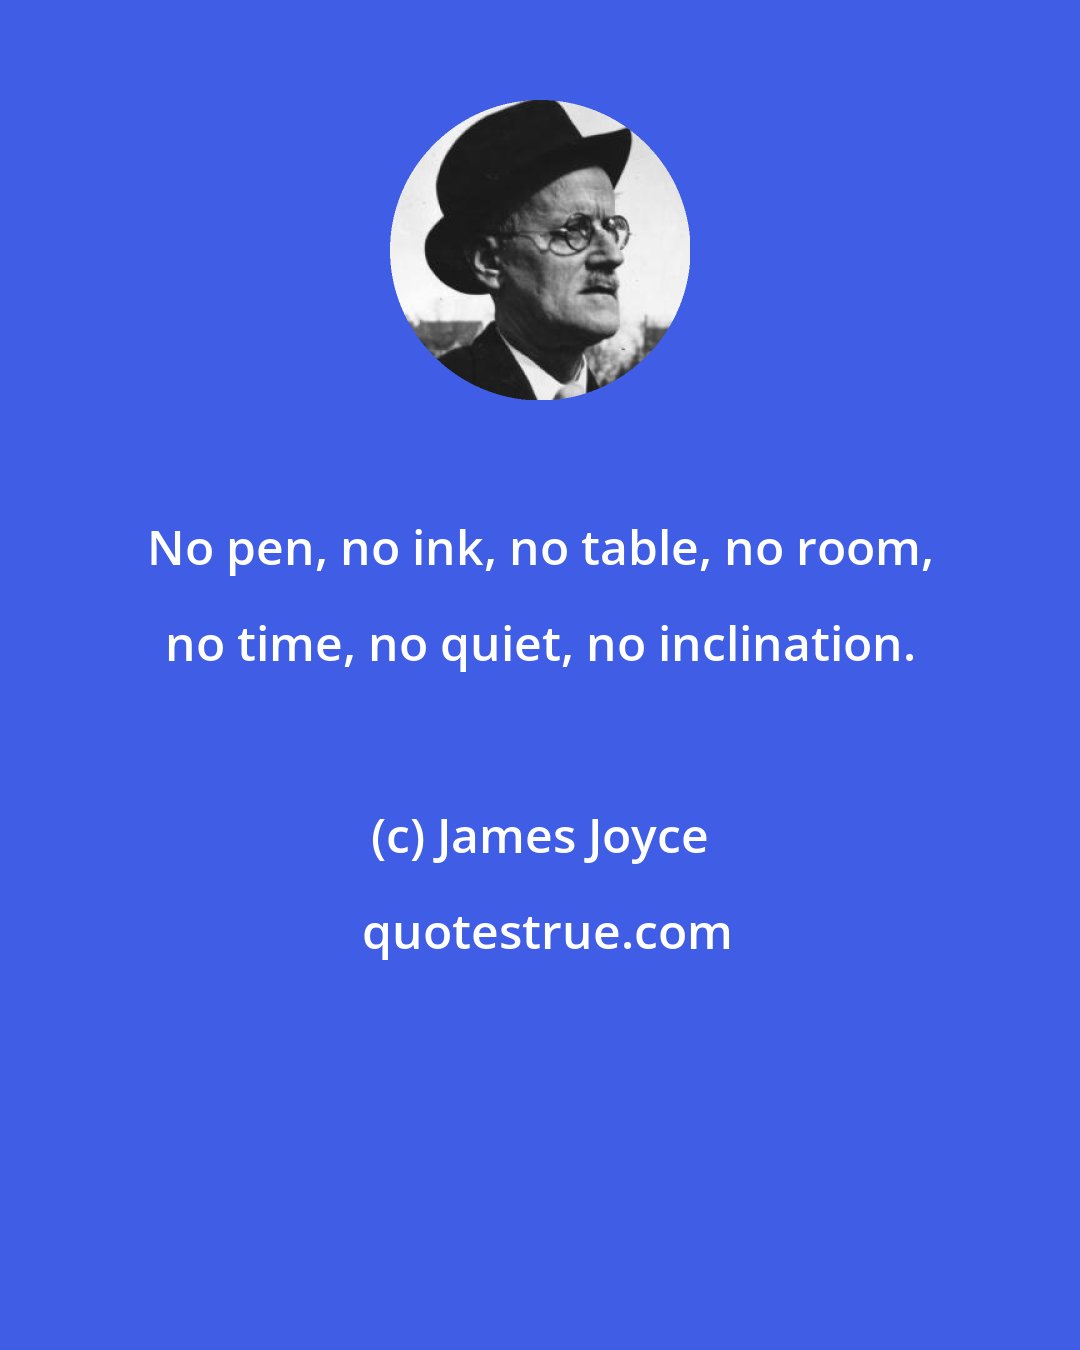 James Joyce: No pen, no ink, no table, no room, no time, no quiet, no inclination.